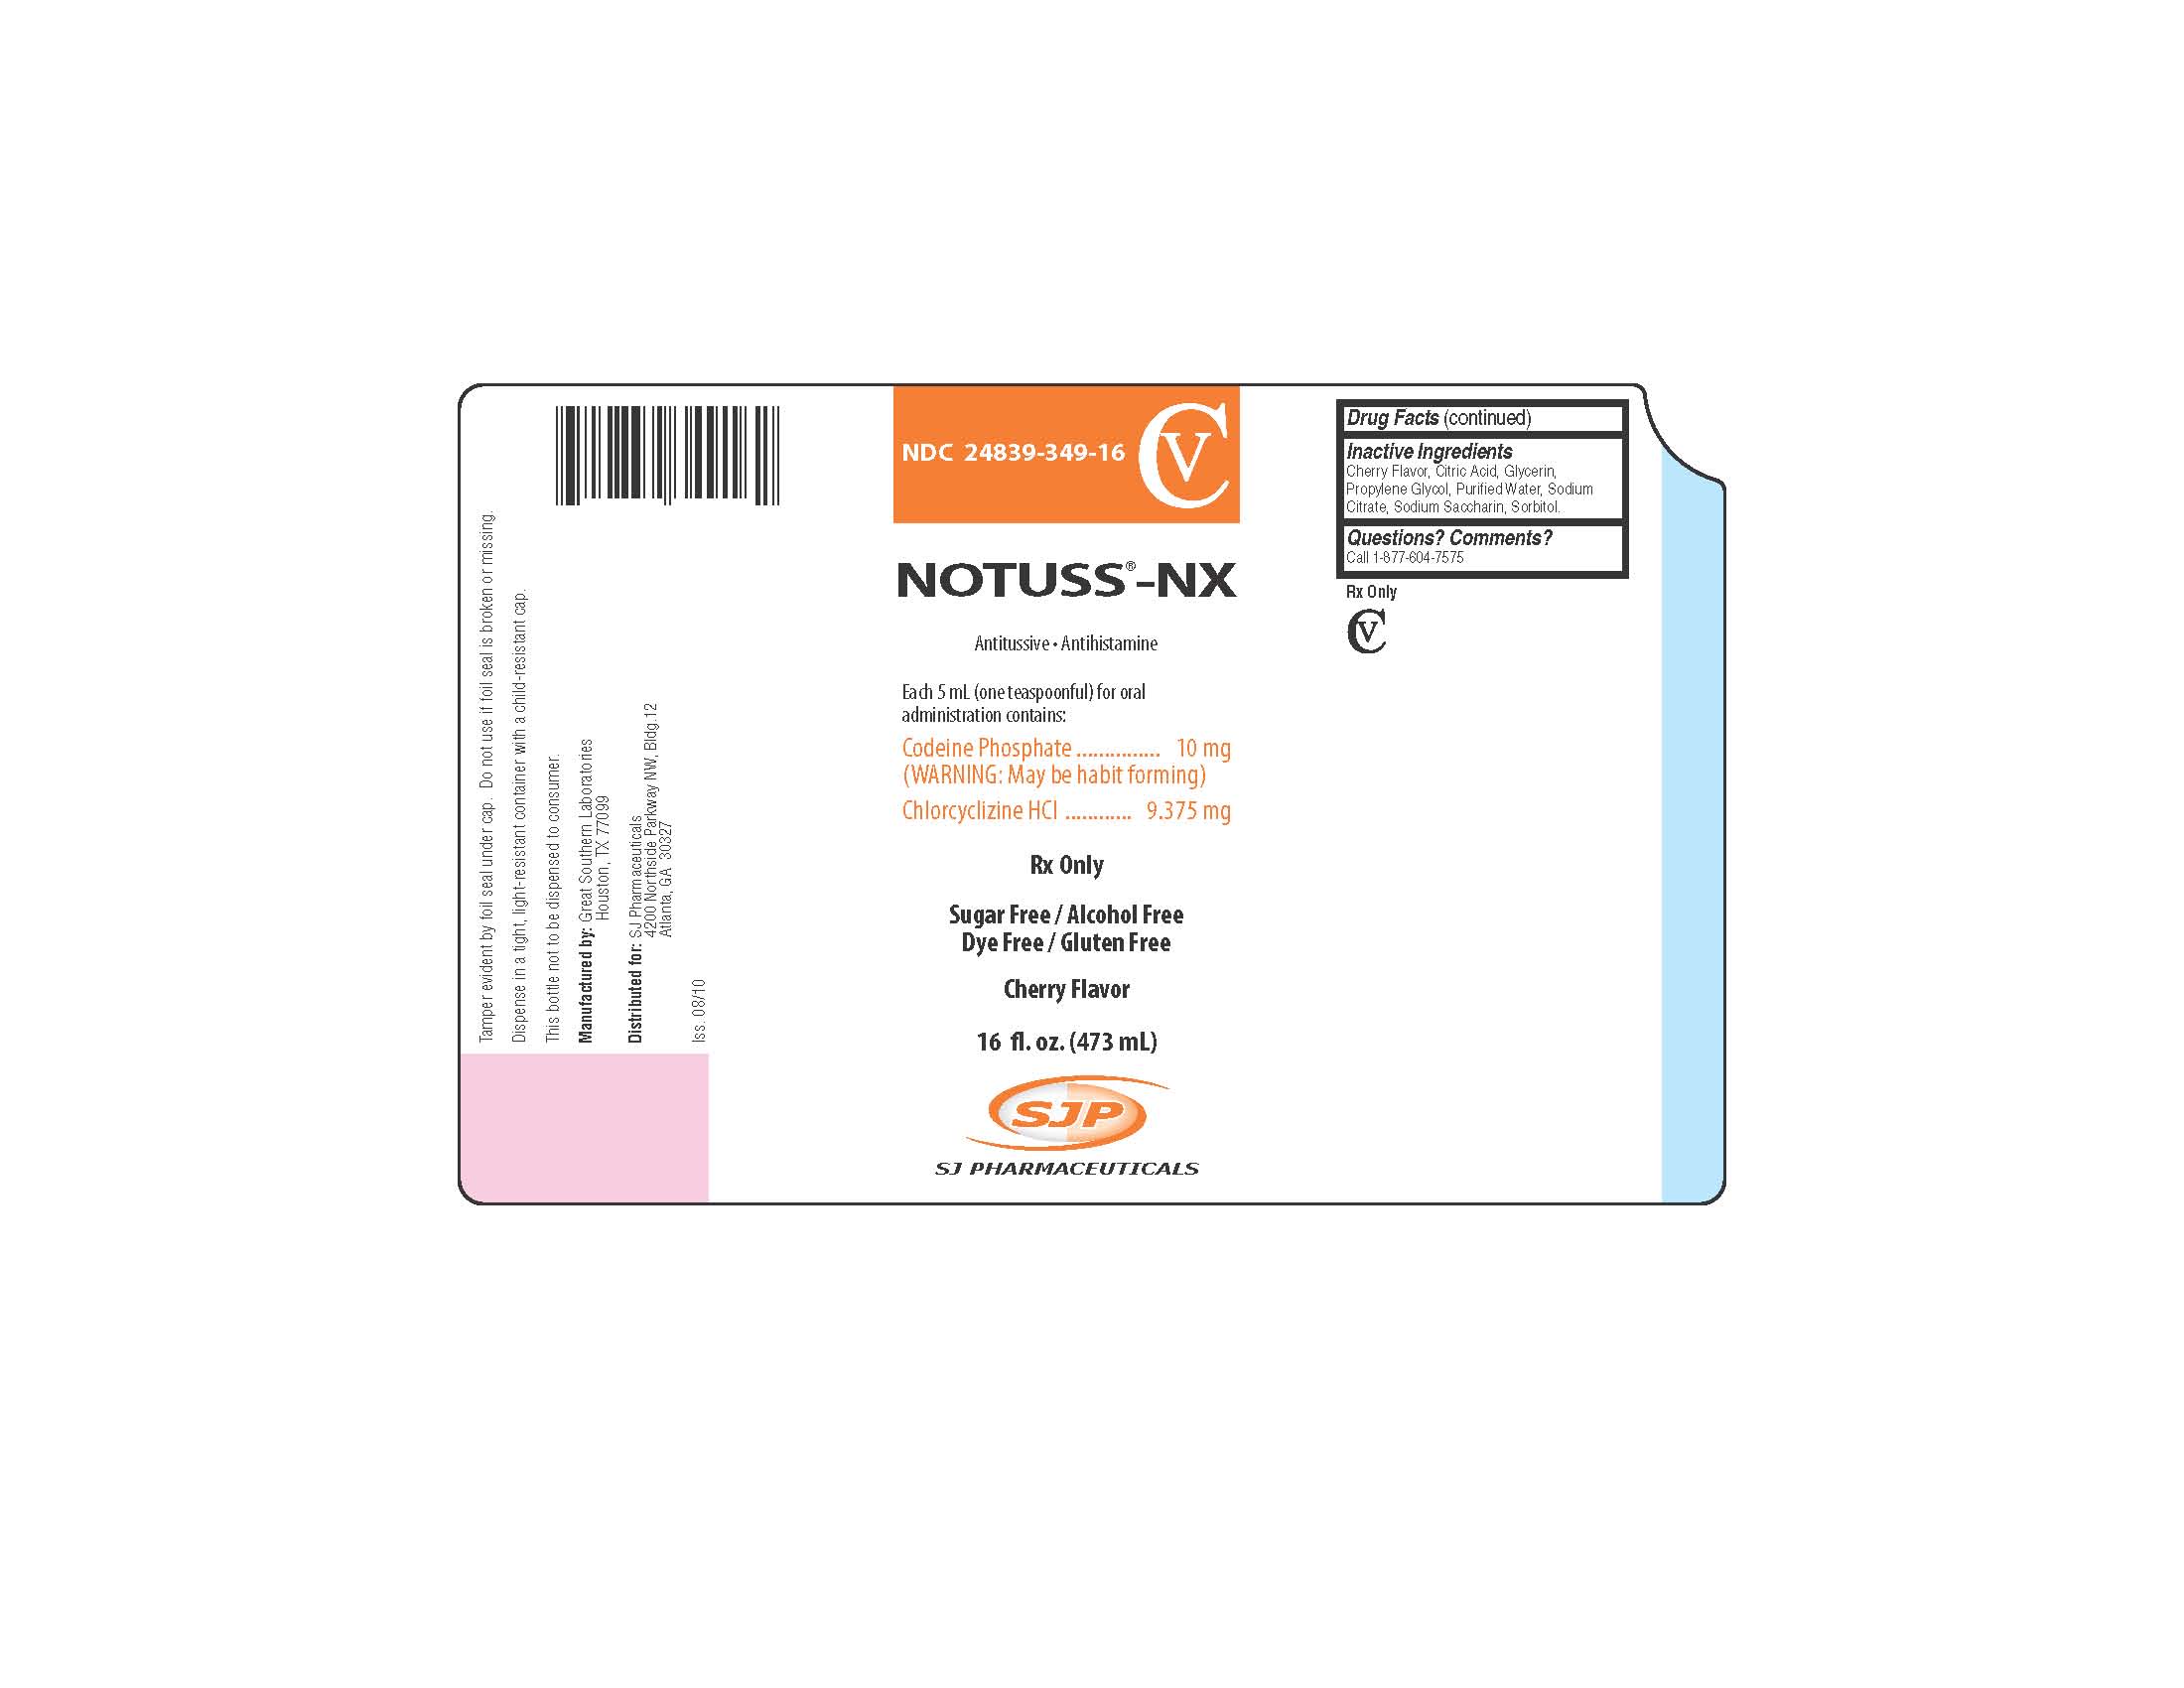 Notuss-NX Packaging